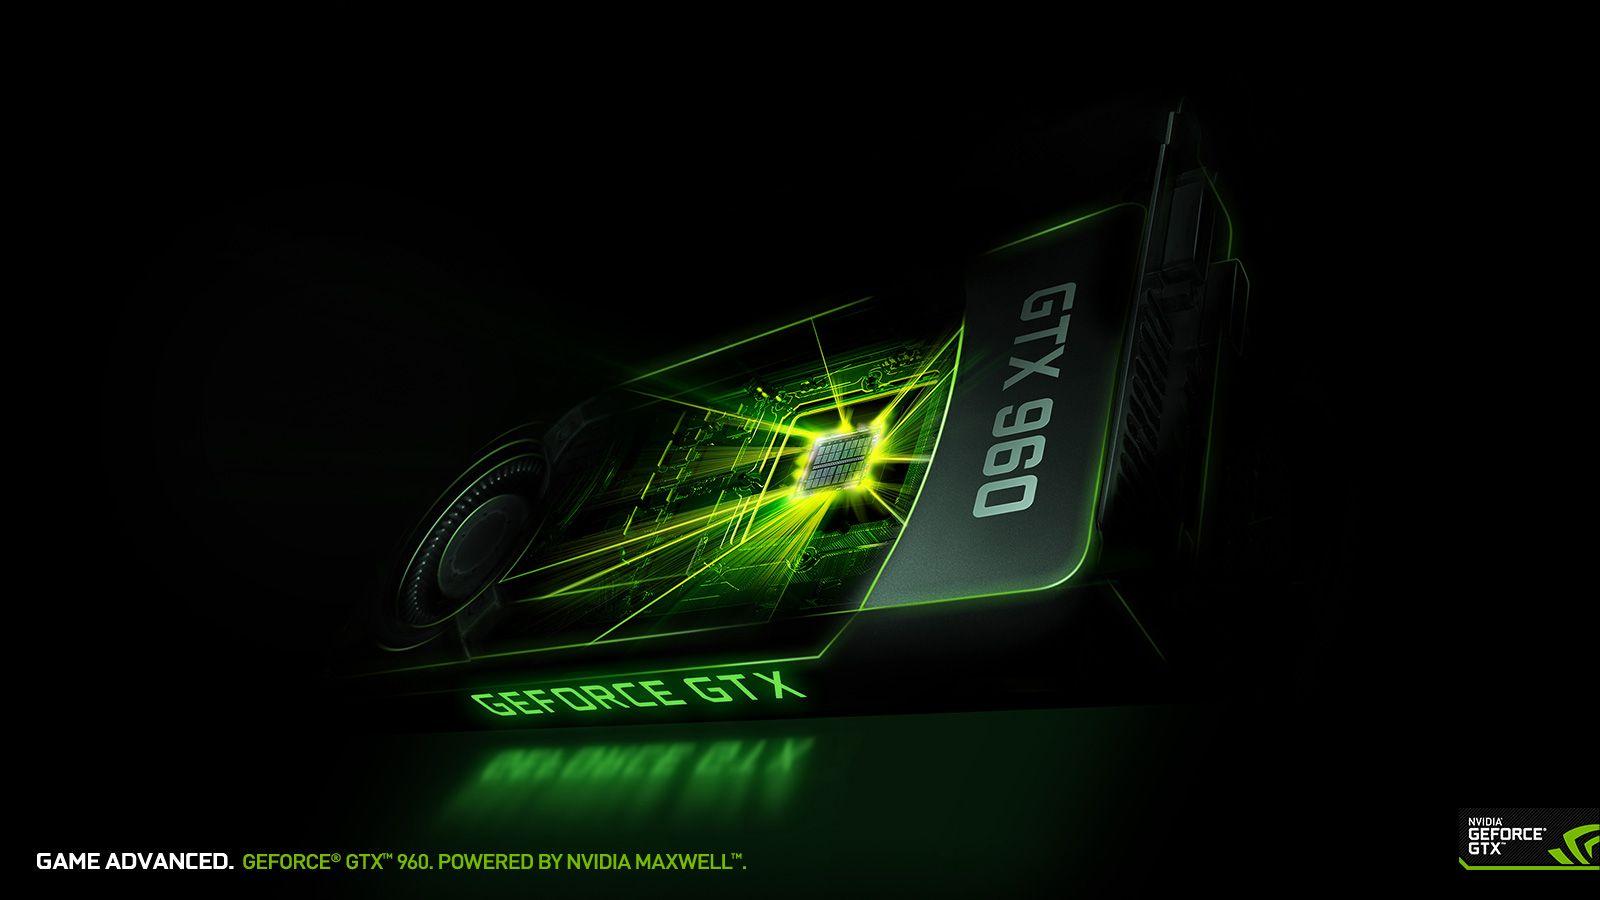 Download The GeForce GTX 960 Wallpaper